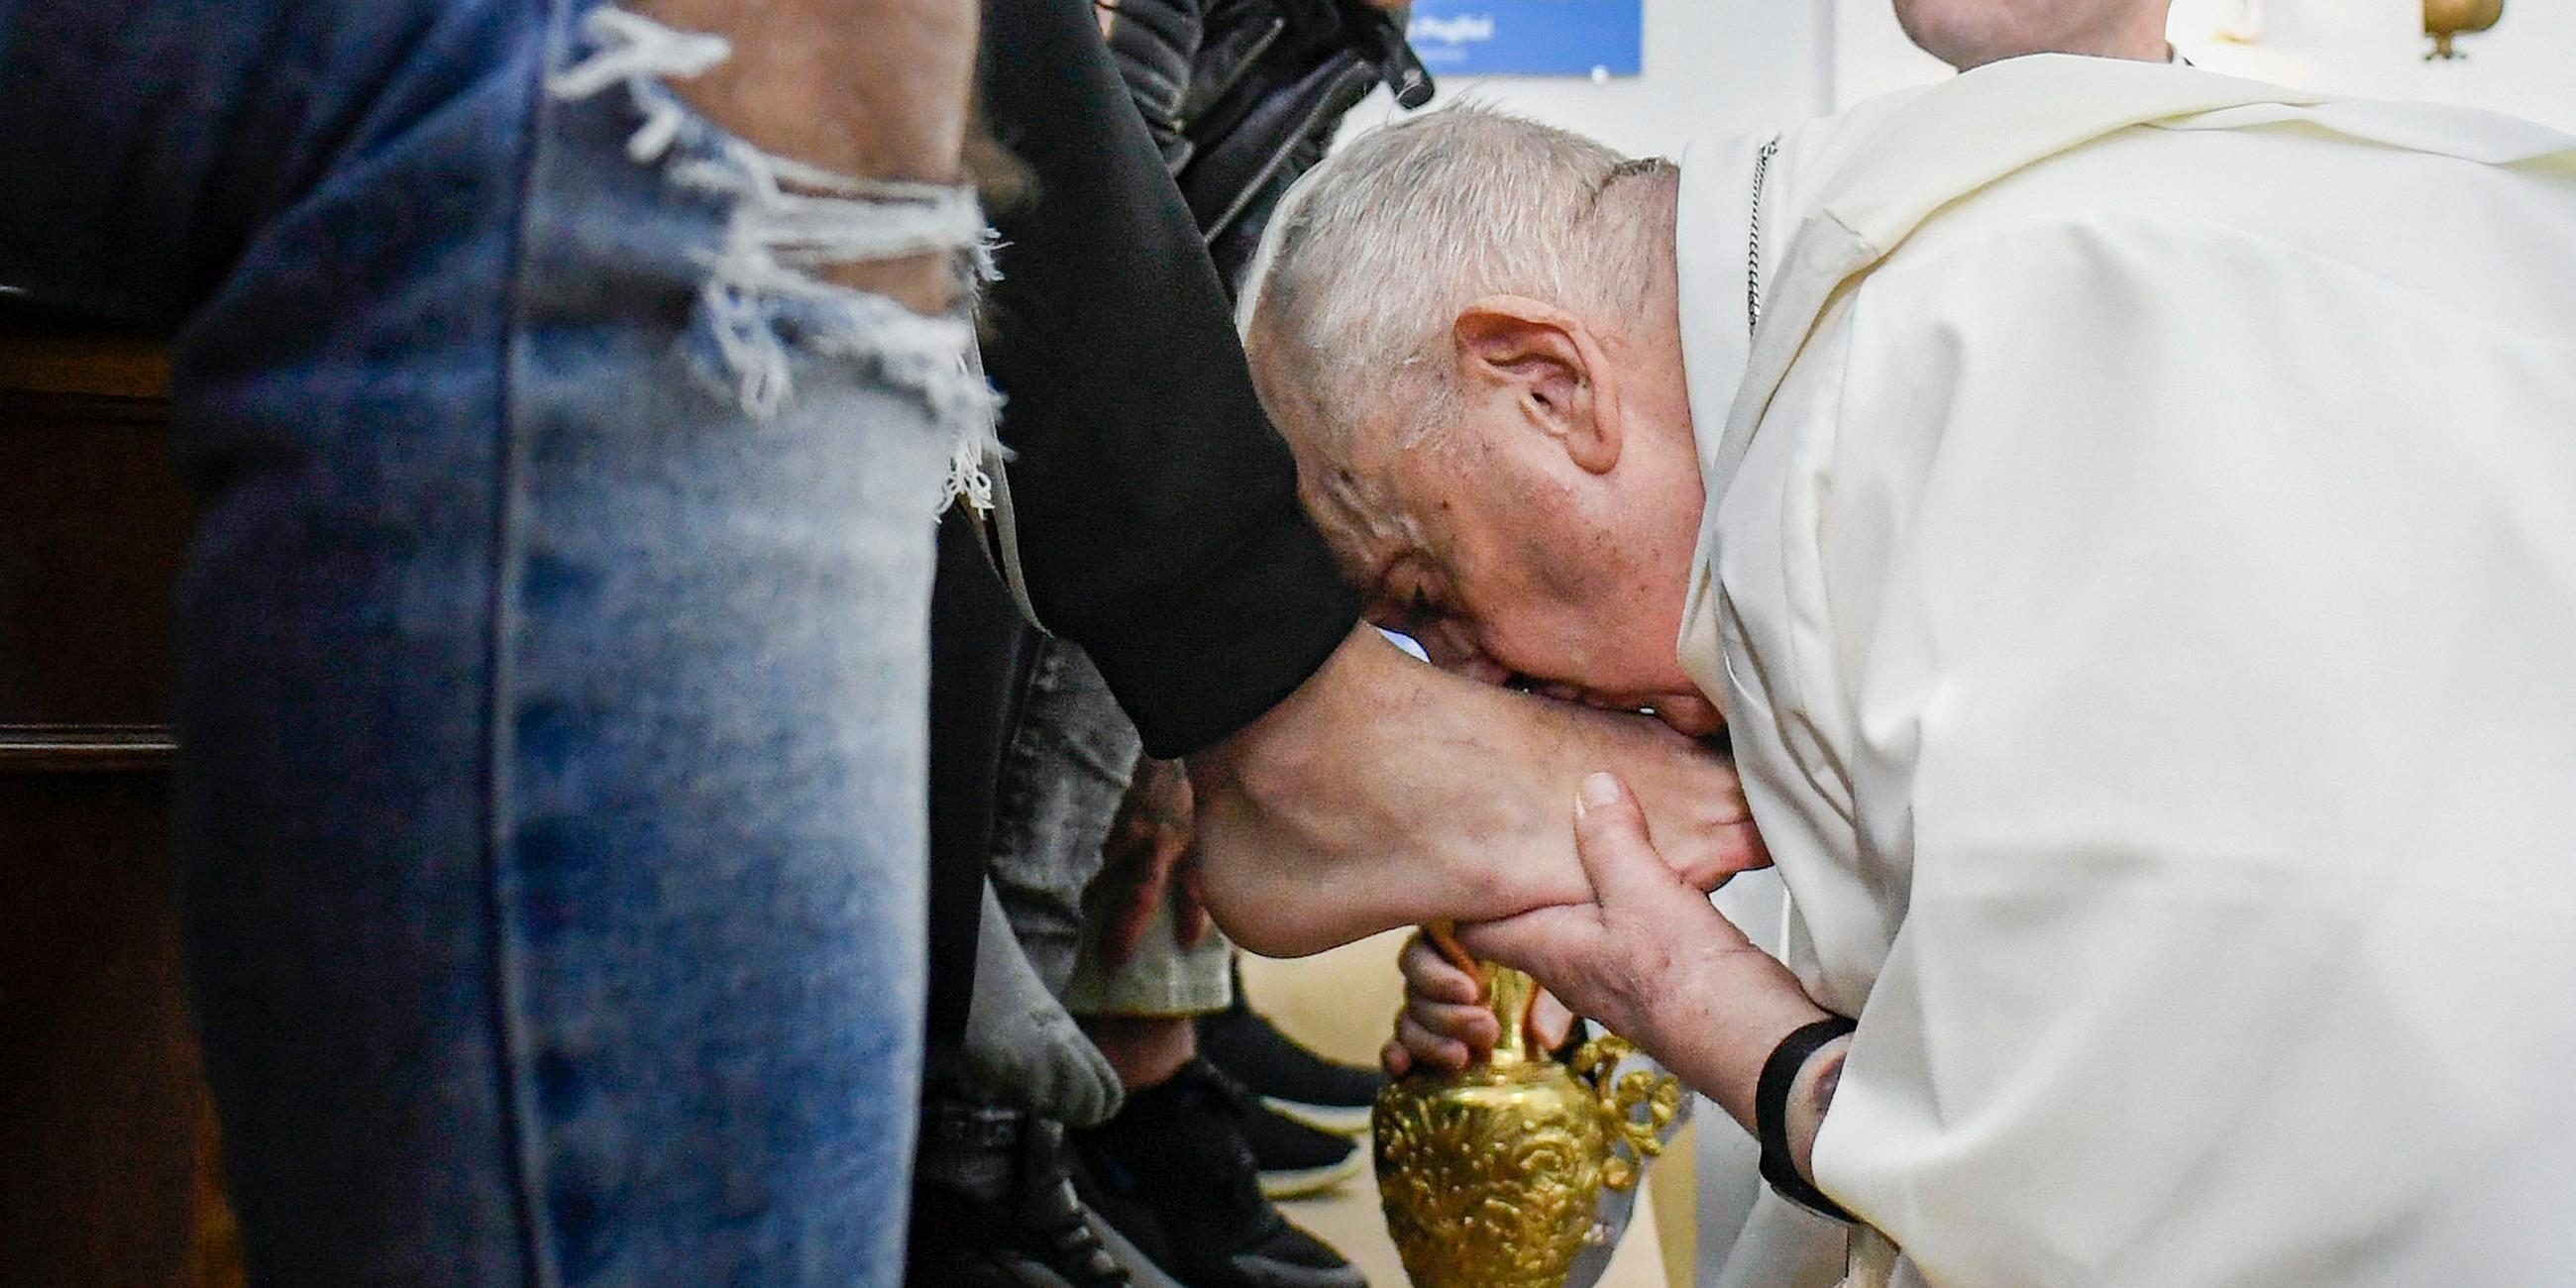 Papst Franziskus hat bei einer rituellen Fußwaschung im Gefängnis Casal del Marmo in Rom Häftlingen die Füße gewaschen und geküsst.